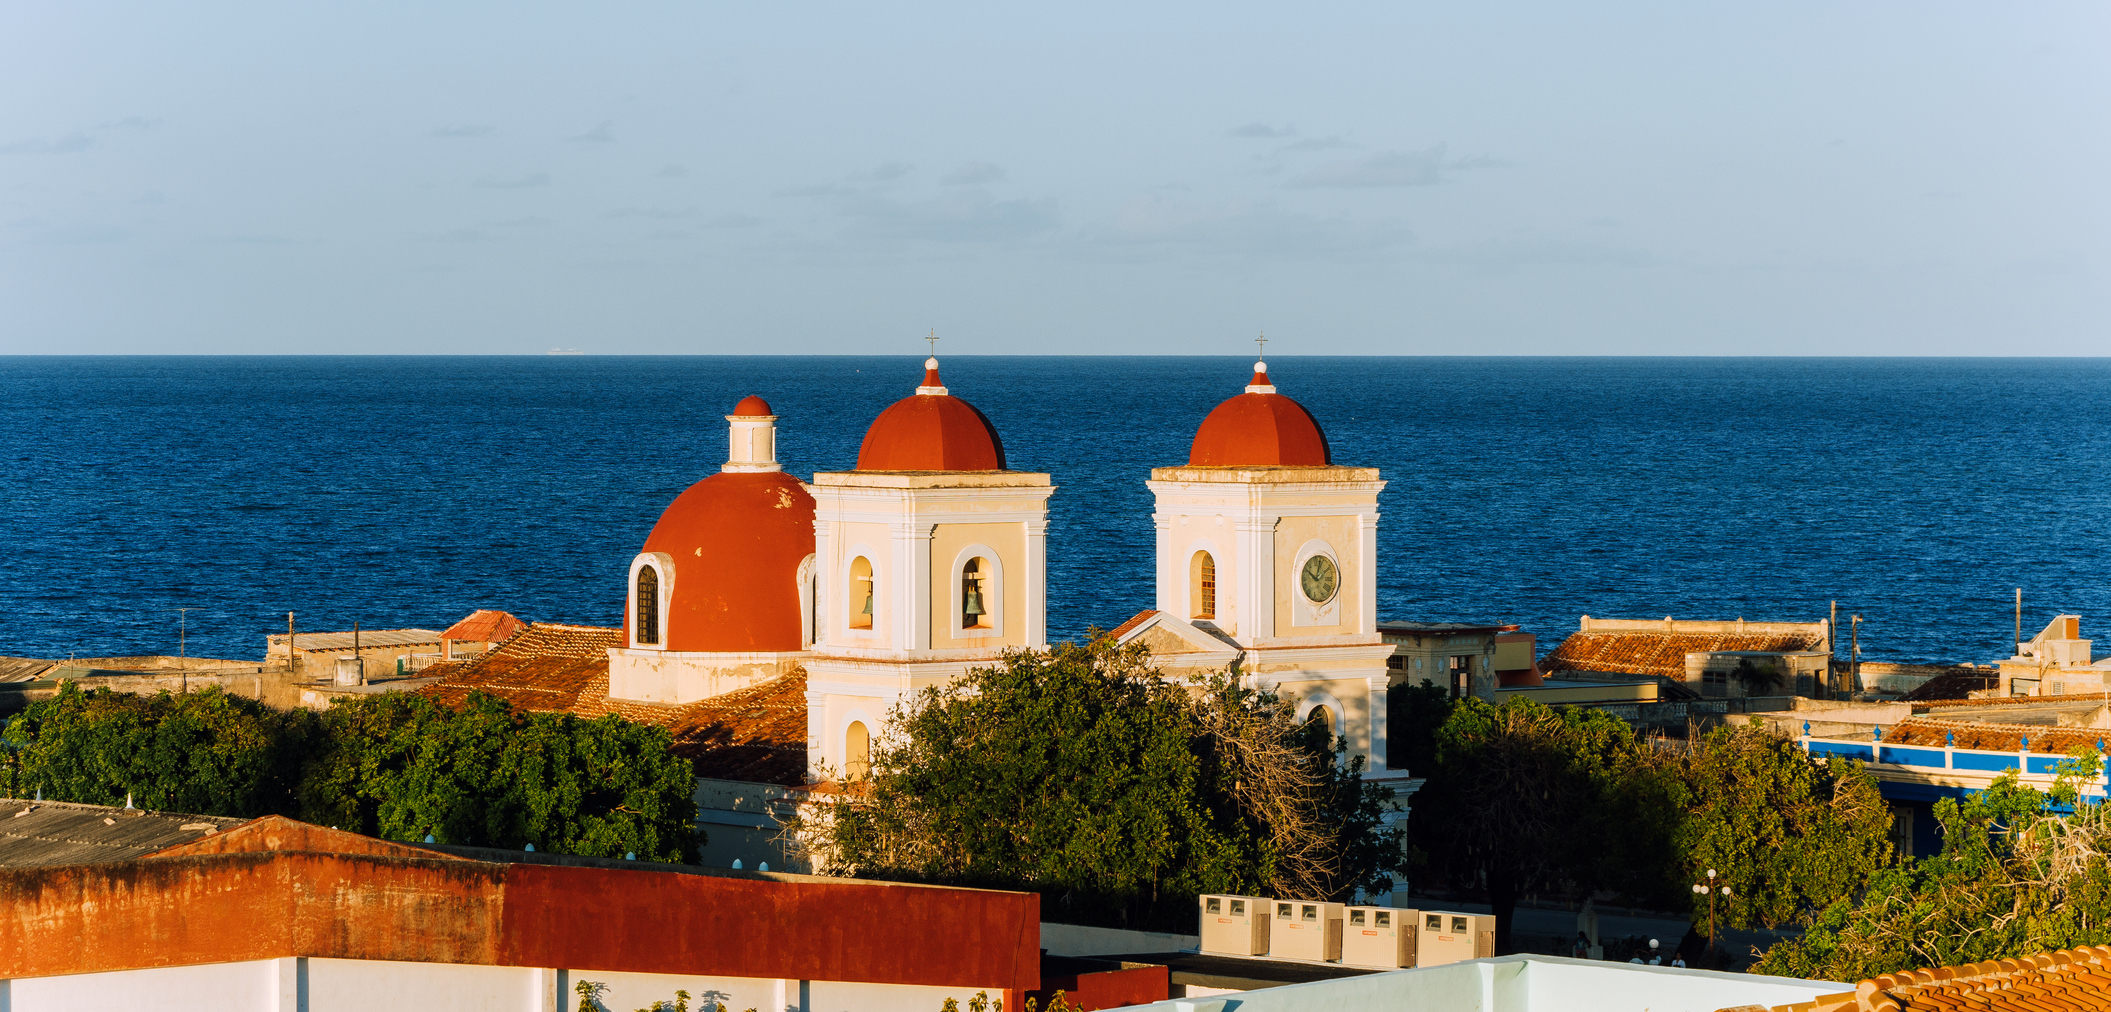 Church at Gibara, Cuba